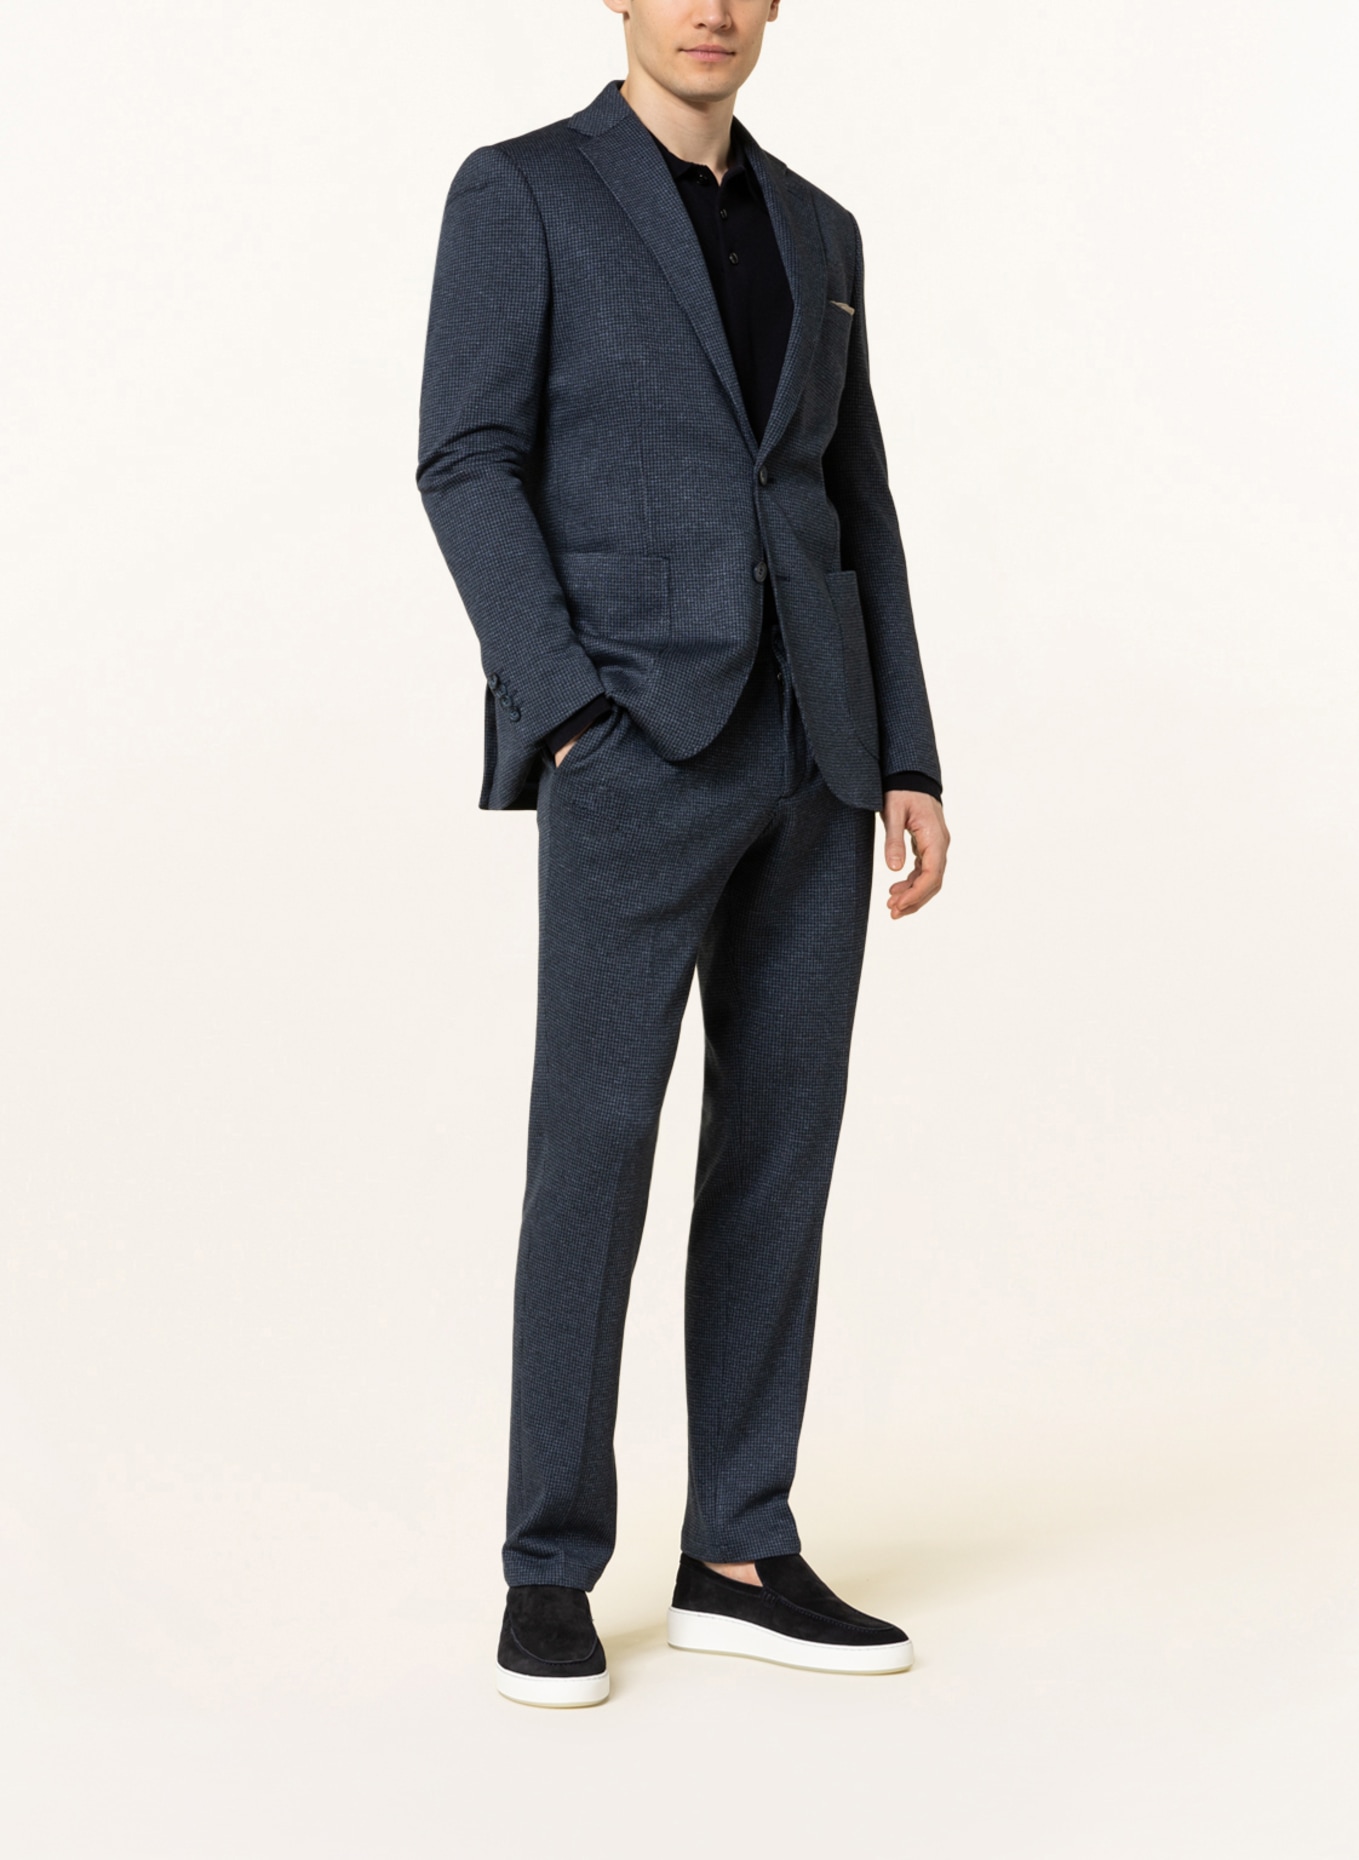 PAUL Suit jacket slim fit, Color: 660 navy (Image 2)